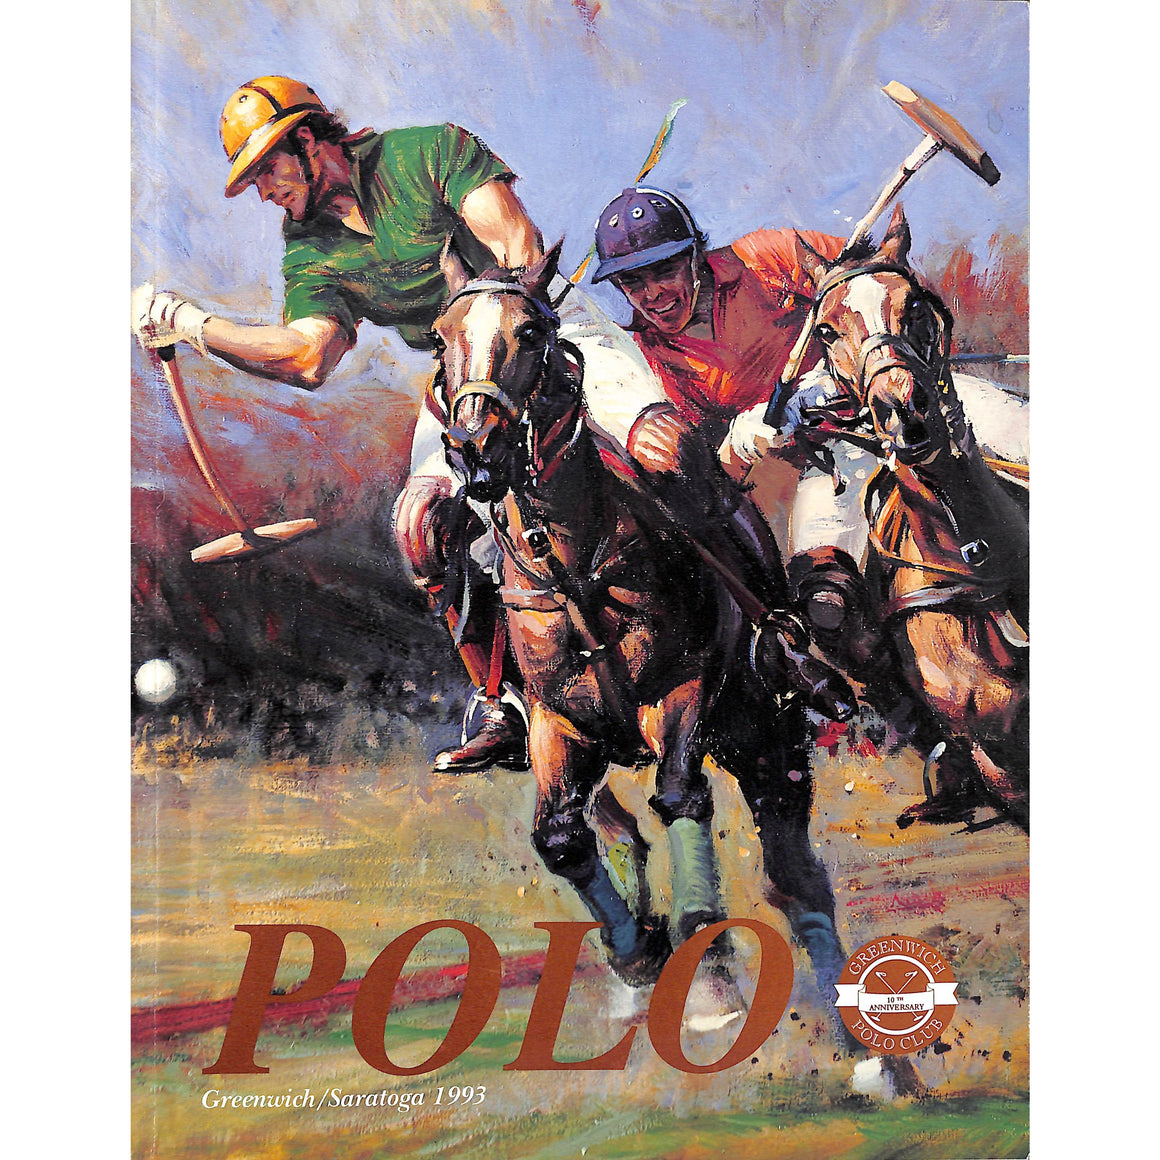 "Polo Magazine Greenwich/ Saratoga 1993" (SOLD)